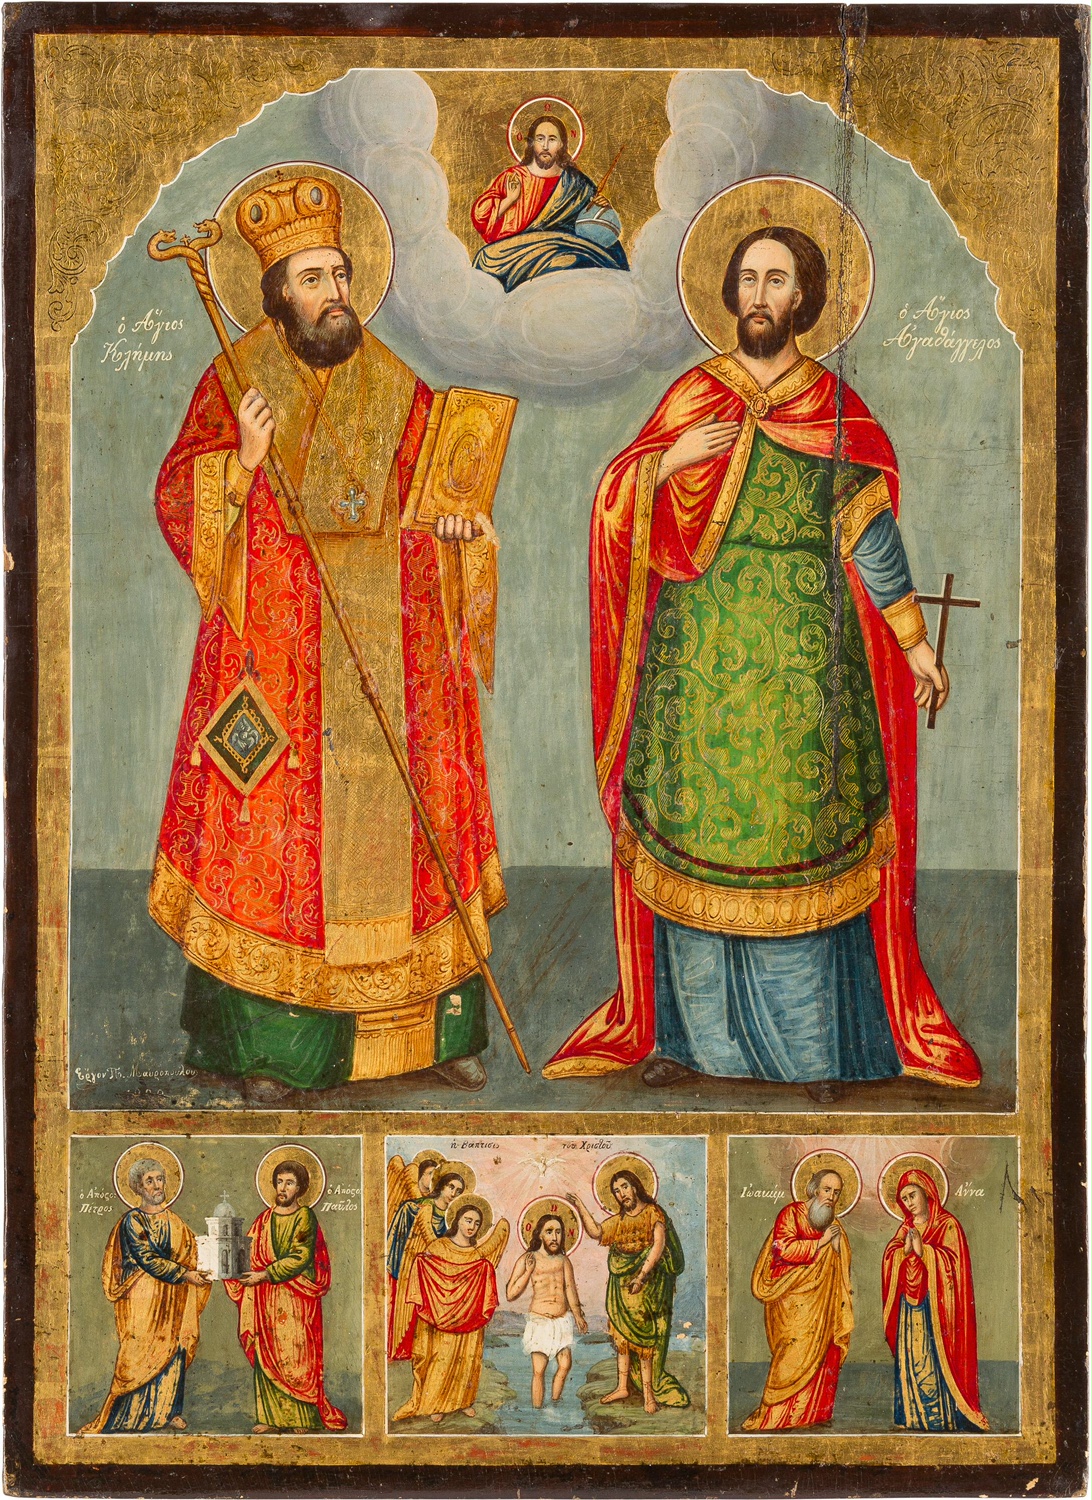 Συναξάρι του Αγίου Ιερομάρτυρος Κλήμεντος, Επισκόπου Αγκύρας και του αγίου μάρτυρος Αγαθαγγέλου